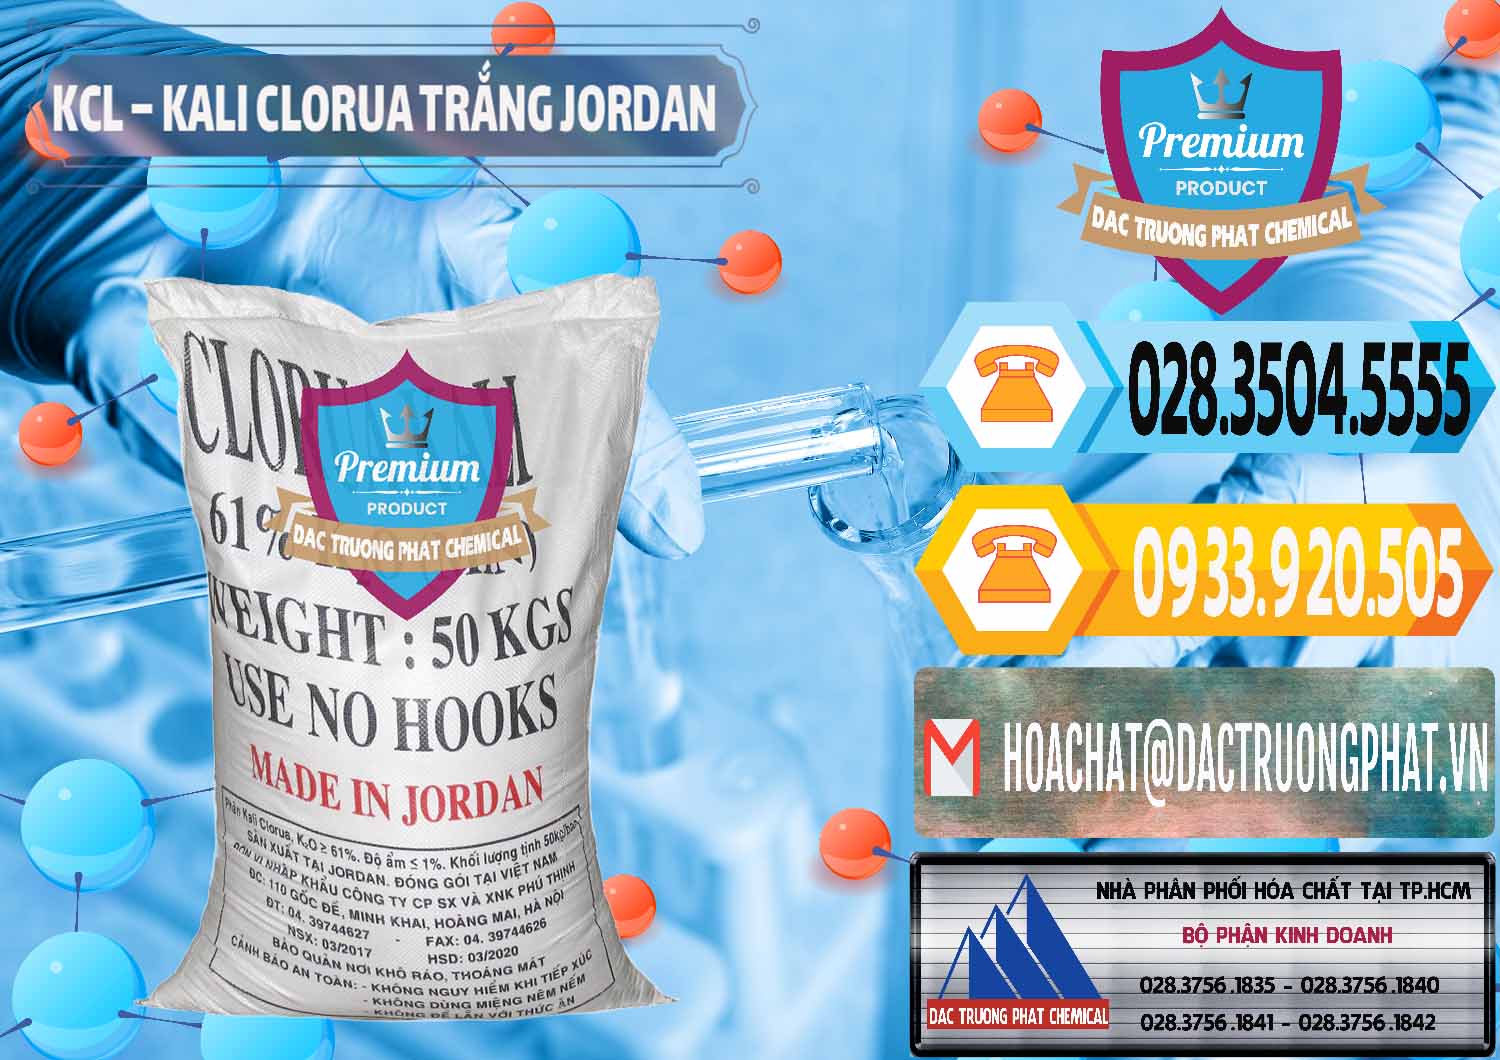 Cty bán và phân phối KCL – Kali Clorua Trắng Jordan - 0088 - Nơi phân phối - cung cấp hóa chất tại TP.HCM - hoachattayrua.net